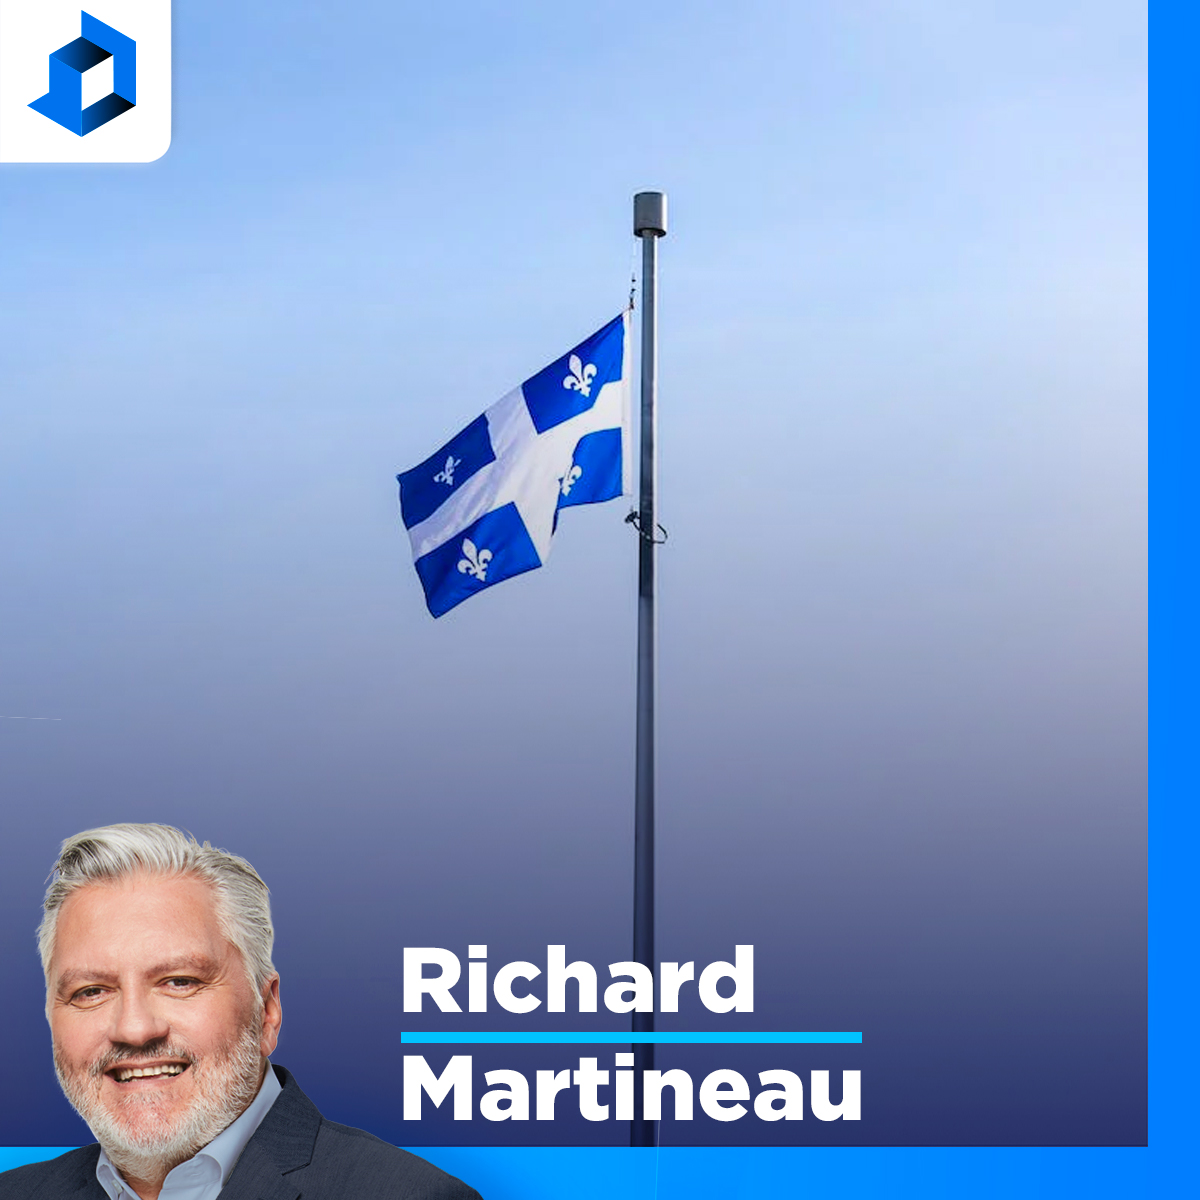 GND et Duhaime tentent de passer pour modérés alors que leurs partis sont radicaux, dit Martineau